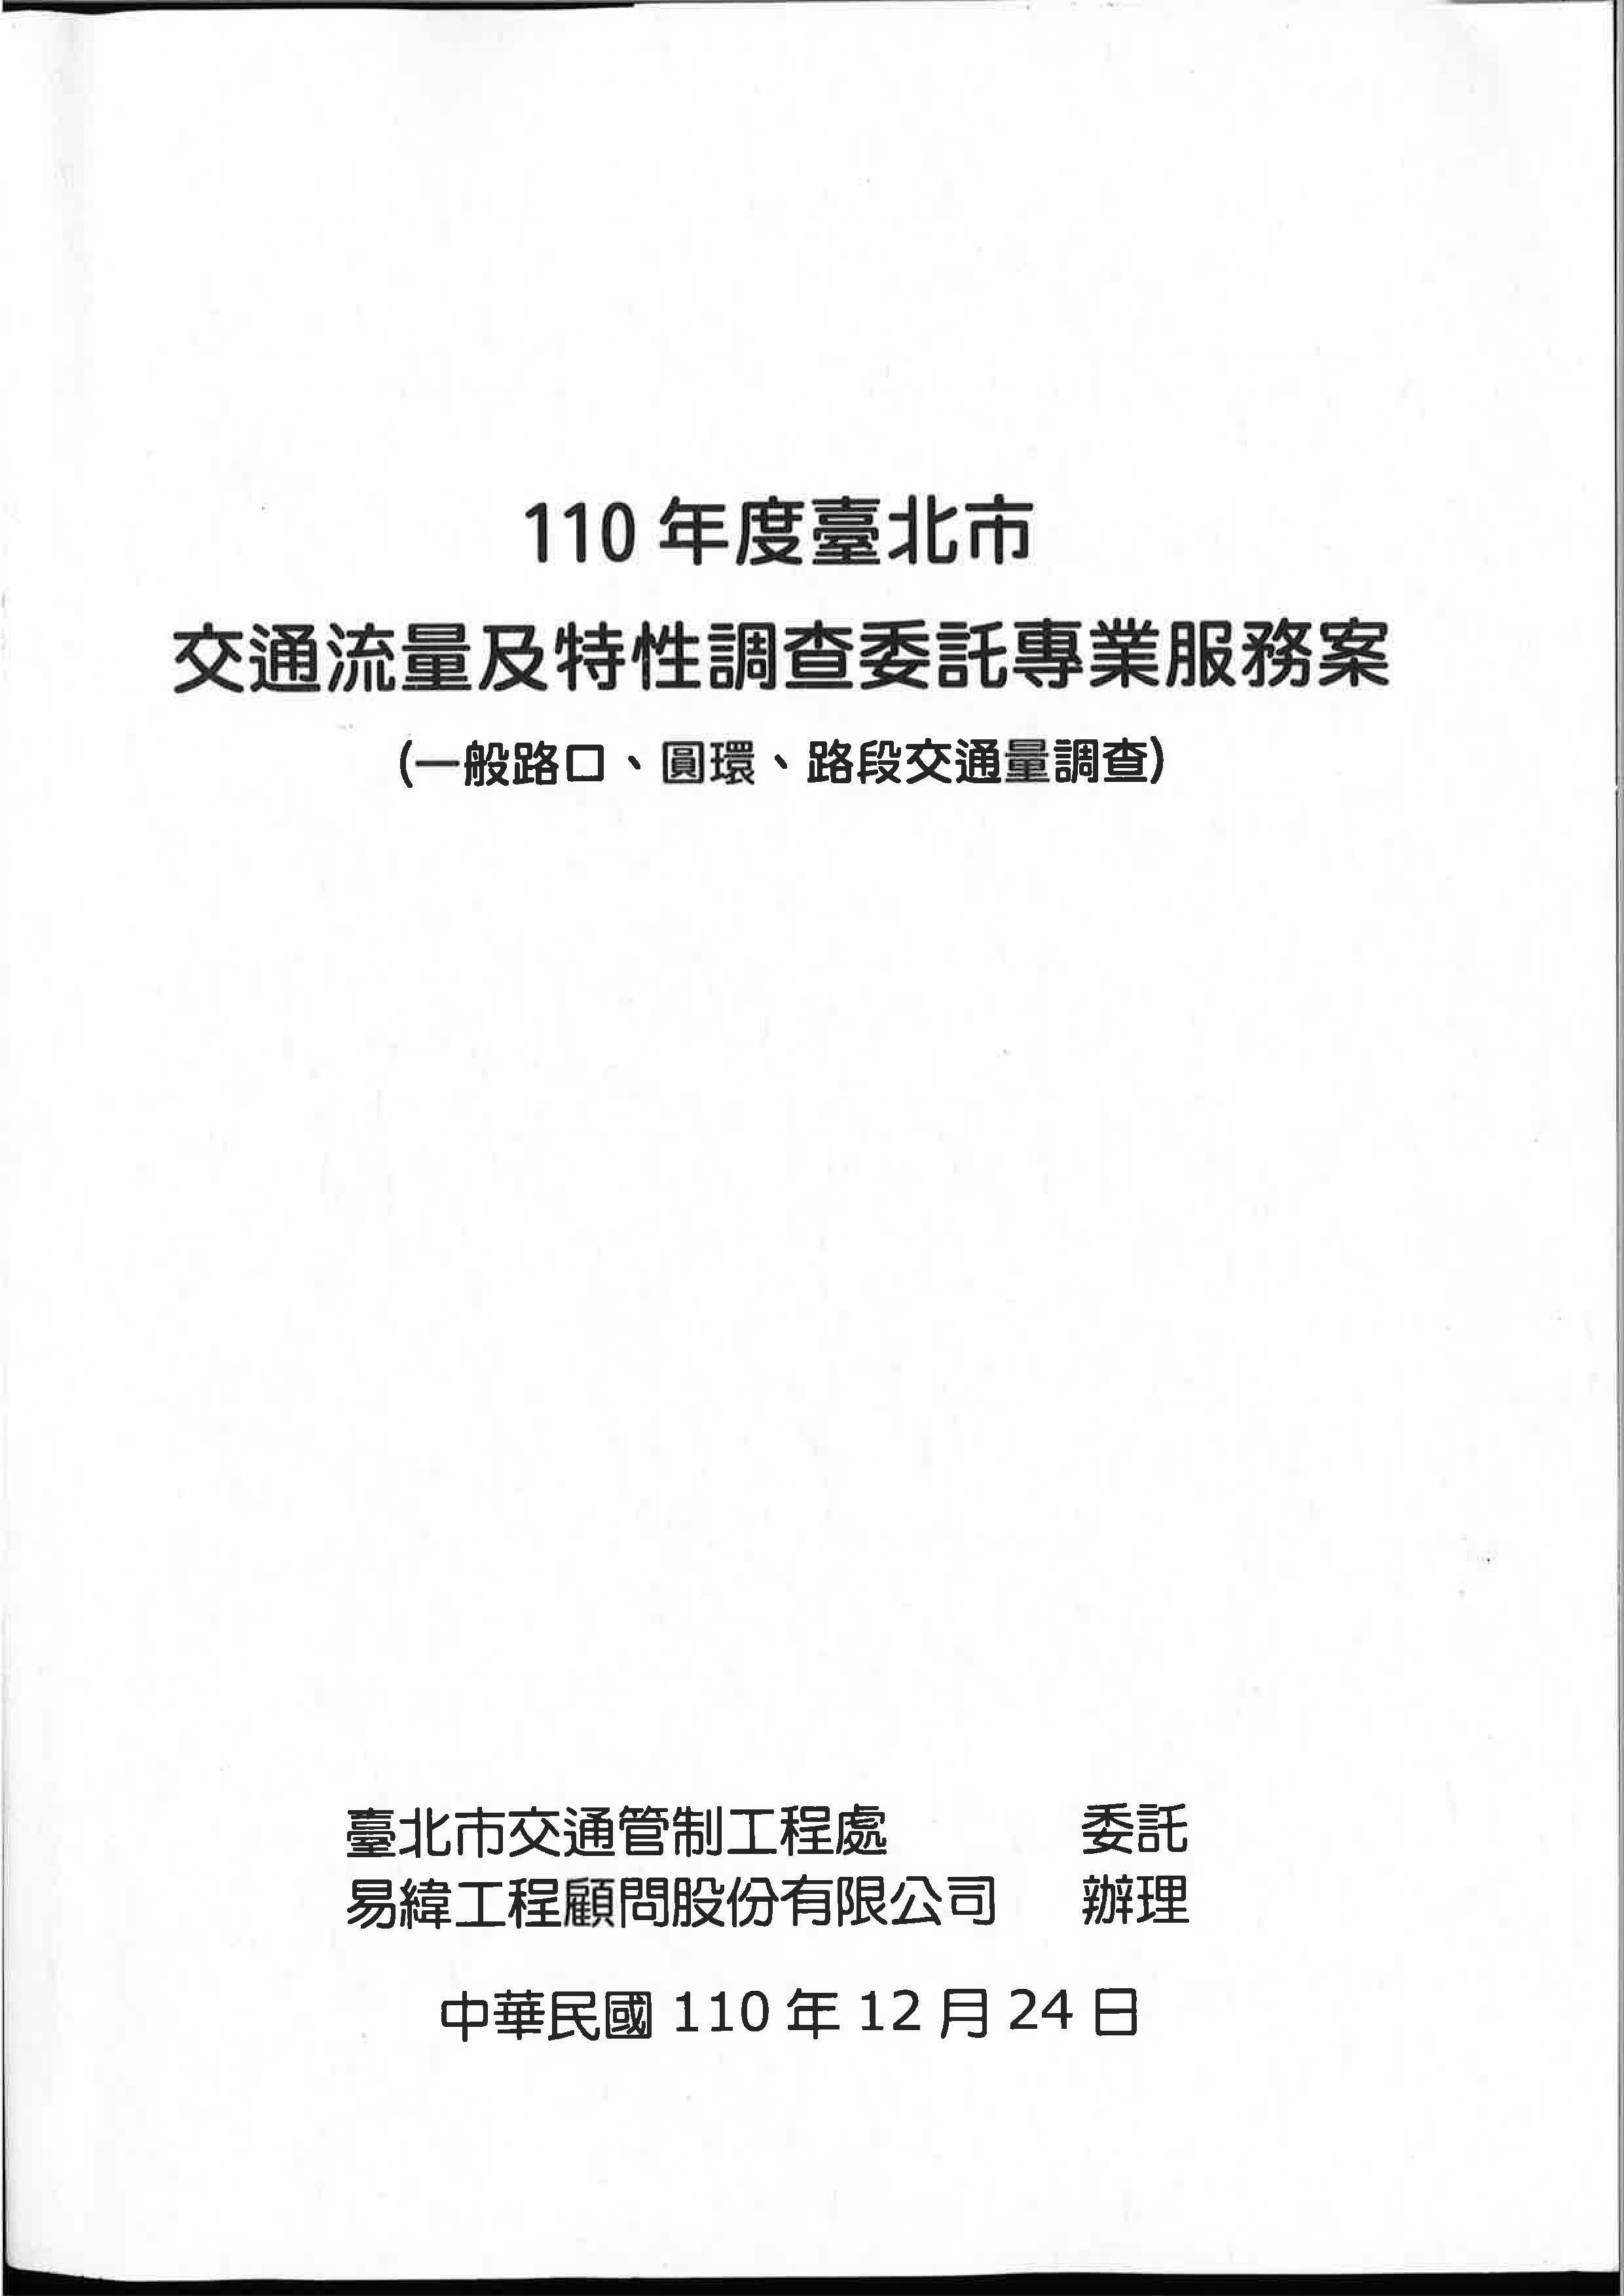 110年度臺北市交通流量及特性調查委託專業服務案(一般路口、圓環、路段交通量調查)